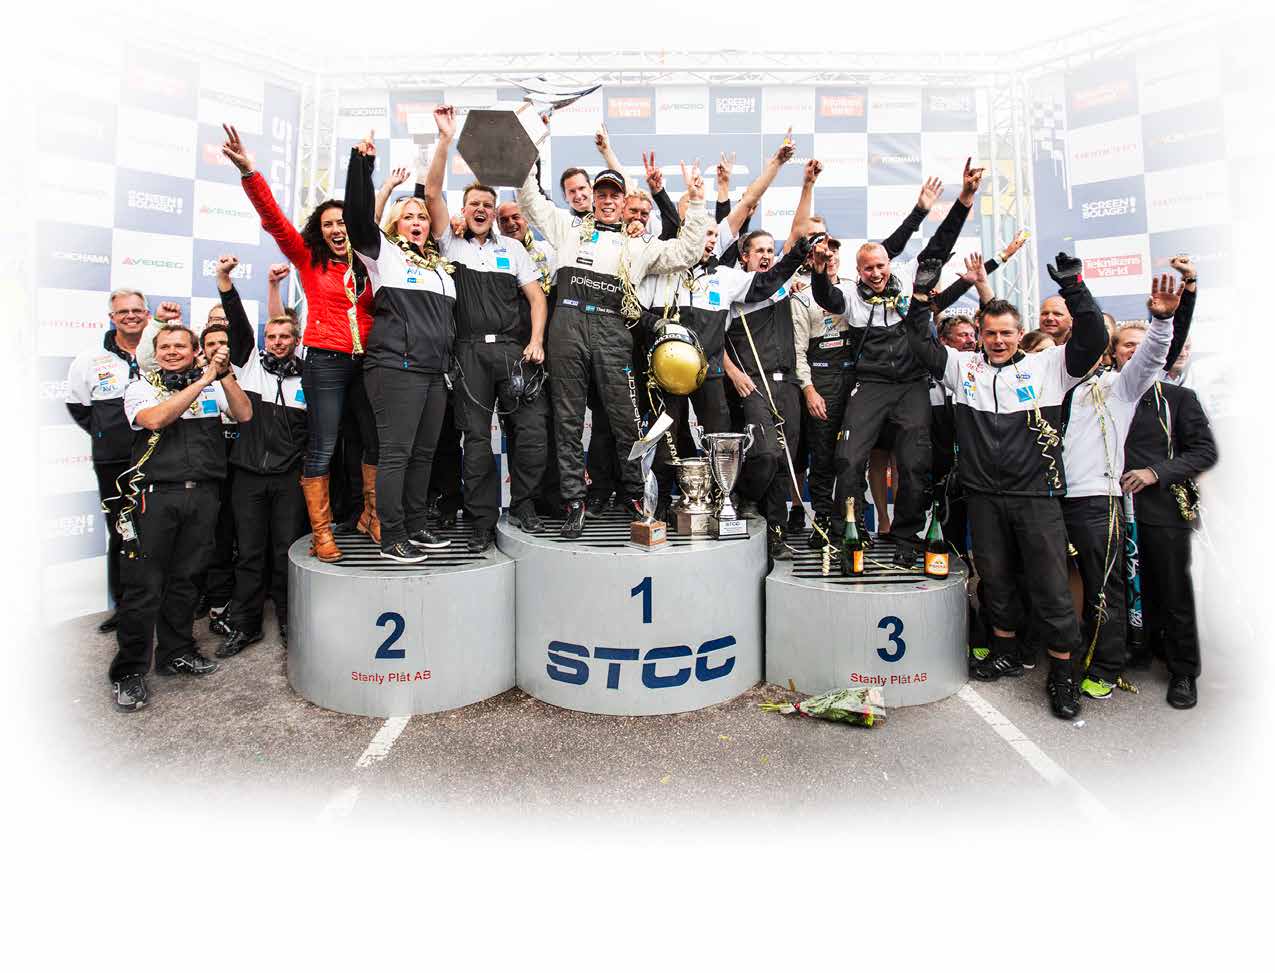 Dubbelseger för Volvo STCC-säsongen 2013 blev en succé för Swecons samarbetspartner Volvo Polestar Racing: SM-guld för Thed Björk i förarmästerskapet och SM-guld för Volvo i märkesmästerskapet.